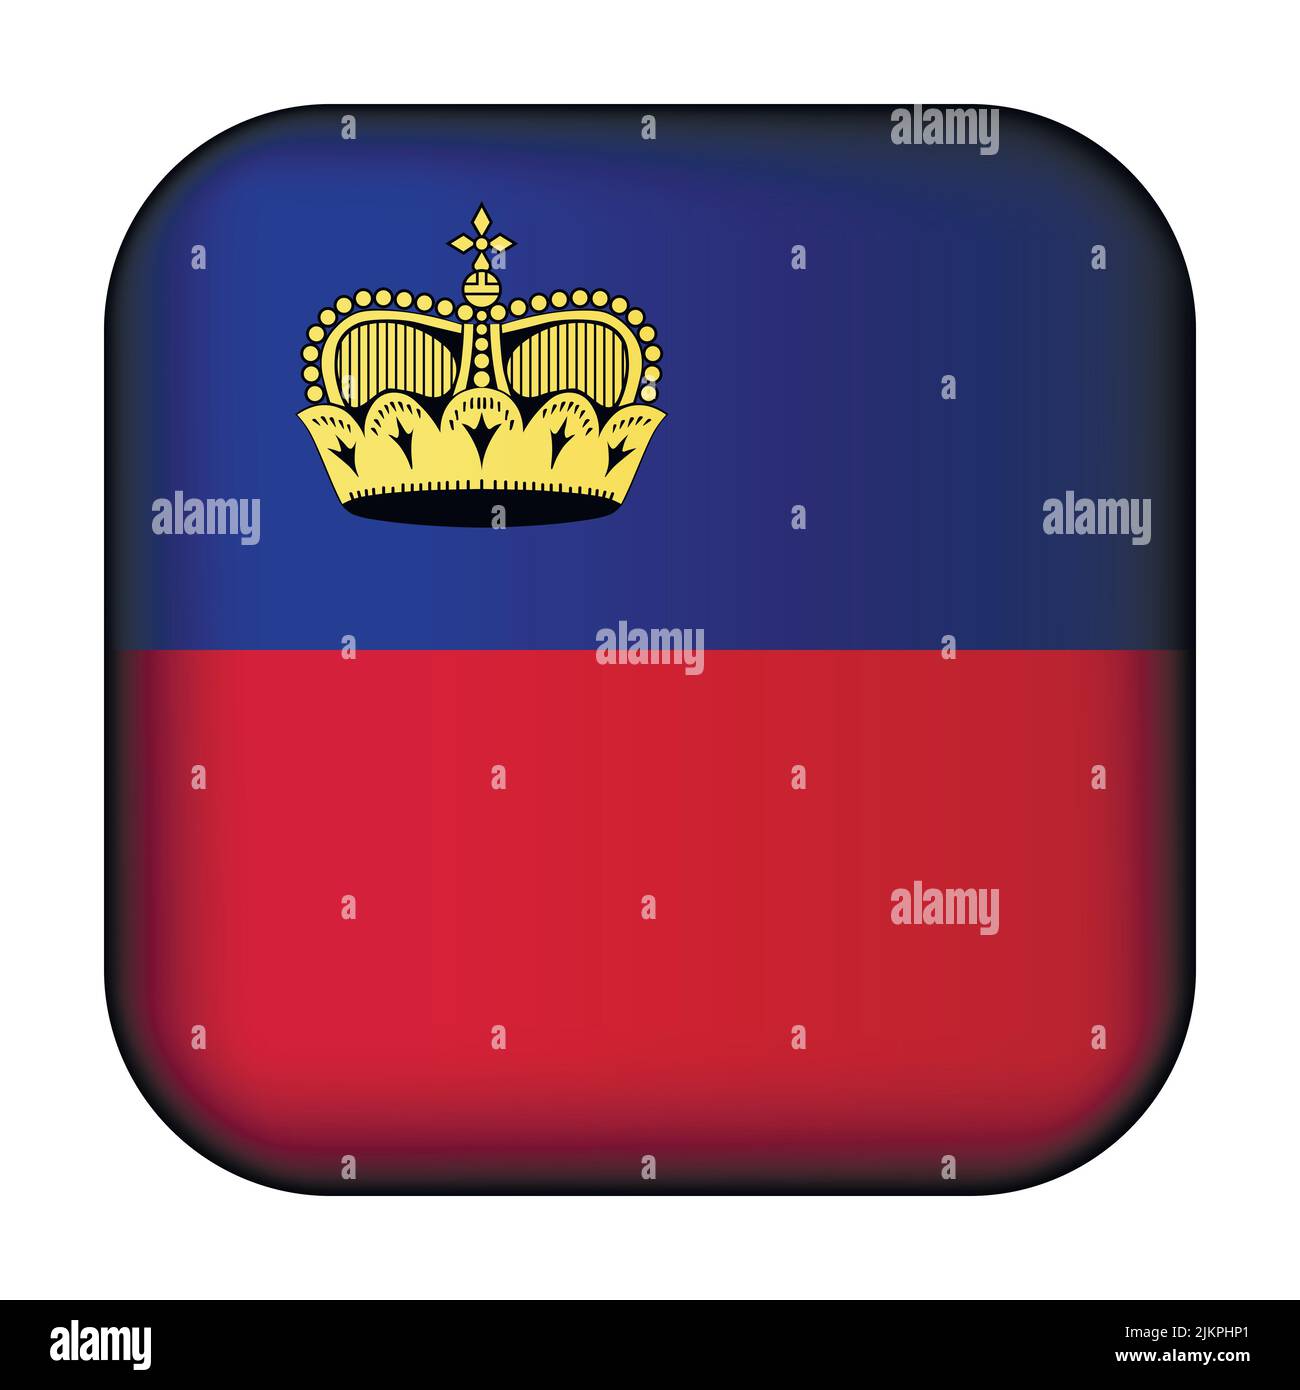 Palla di vetro con bandiera del Liechtenstein. Icona del modello quadrata. Simbolo nazionale. Cubo lucido realistico, illustrazione vettoriale astratta 3D Illustrazione Vettoriale